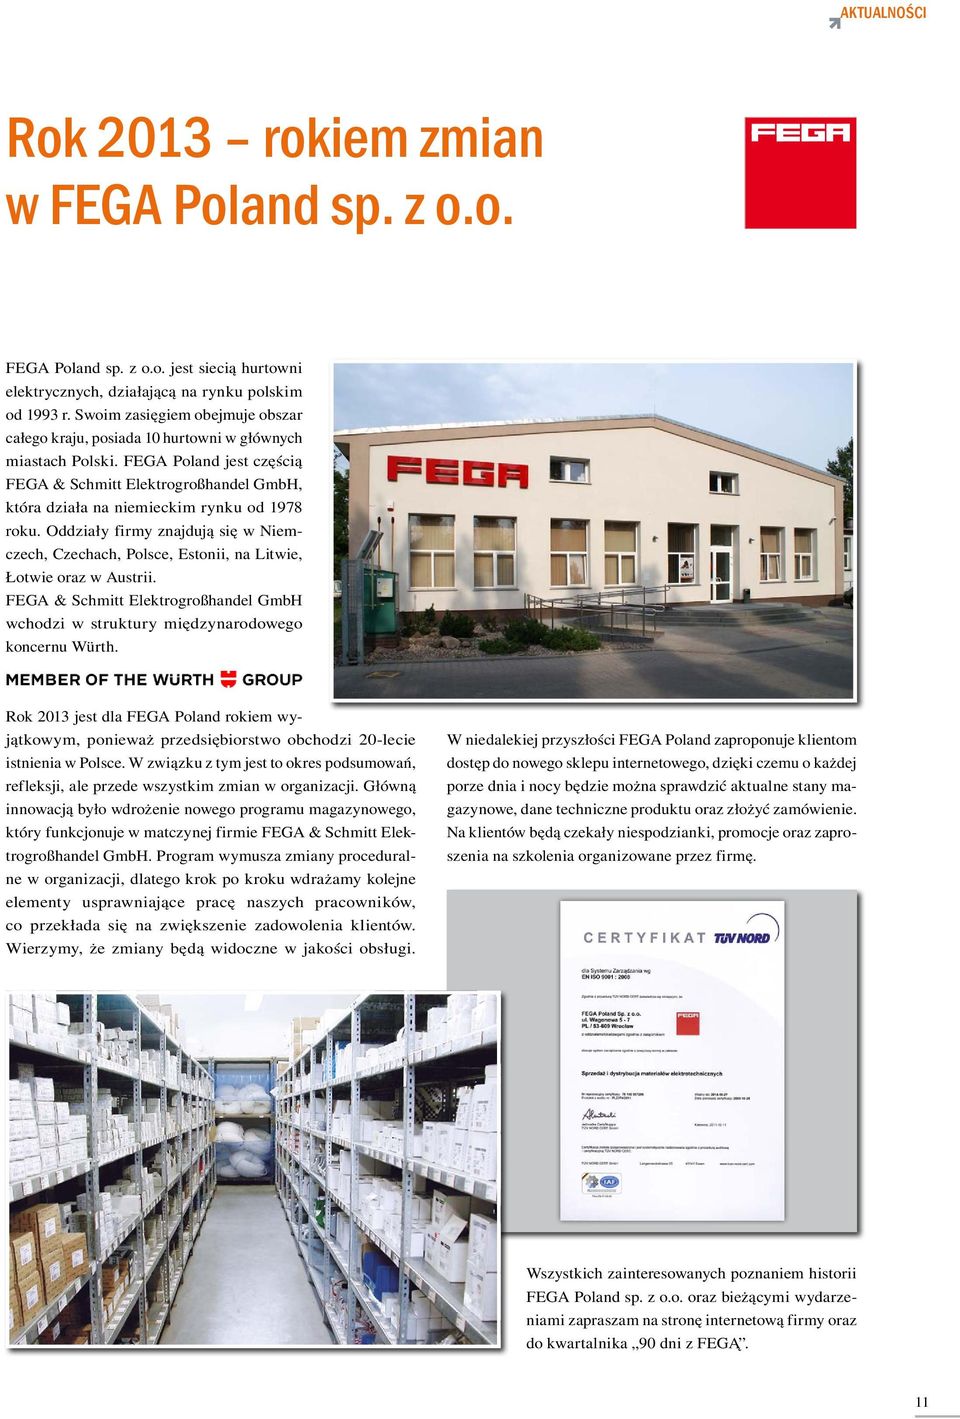 FEGA Poland jest częścią FEGA & Schmitt Elektrogroßhandel GmbH, która działa na niemieckim rynku od 1978 roku.